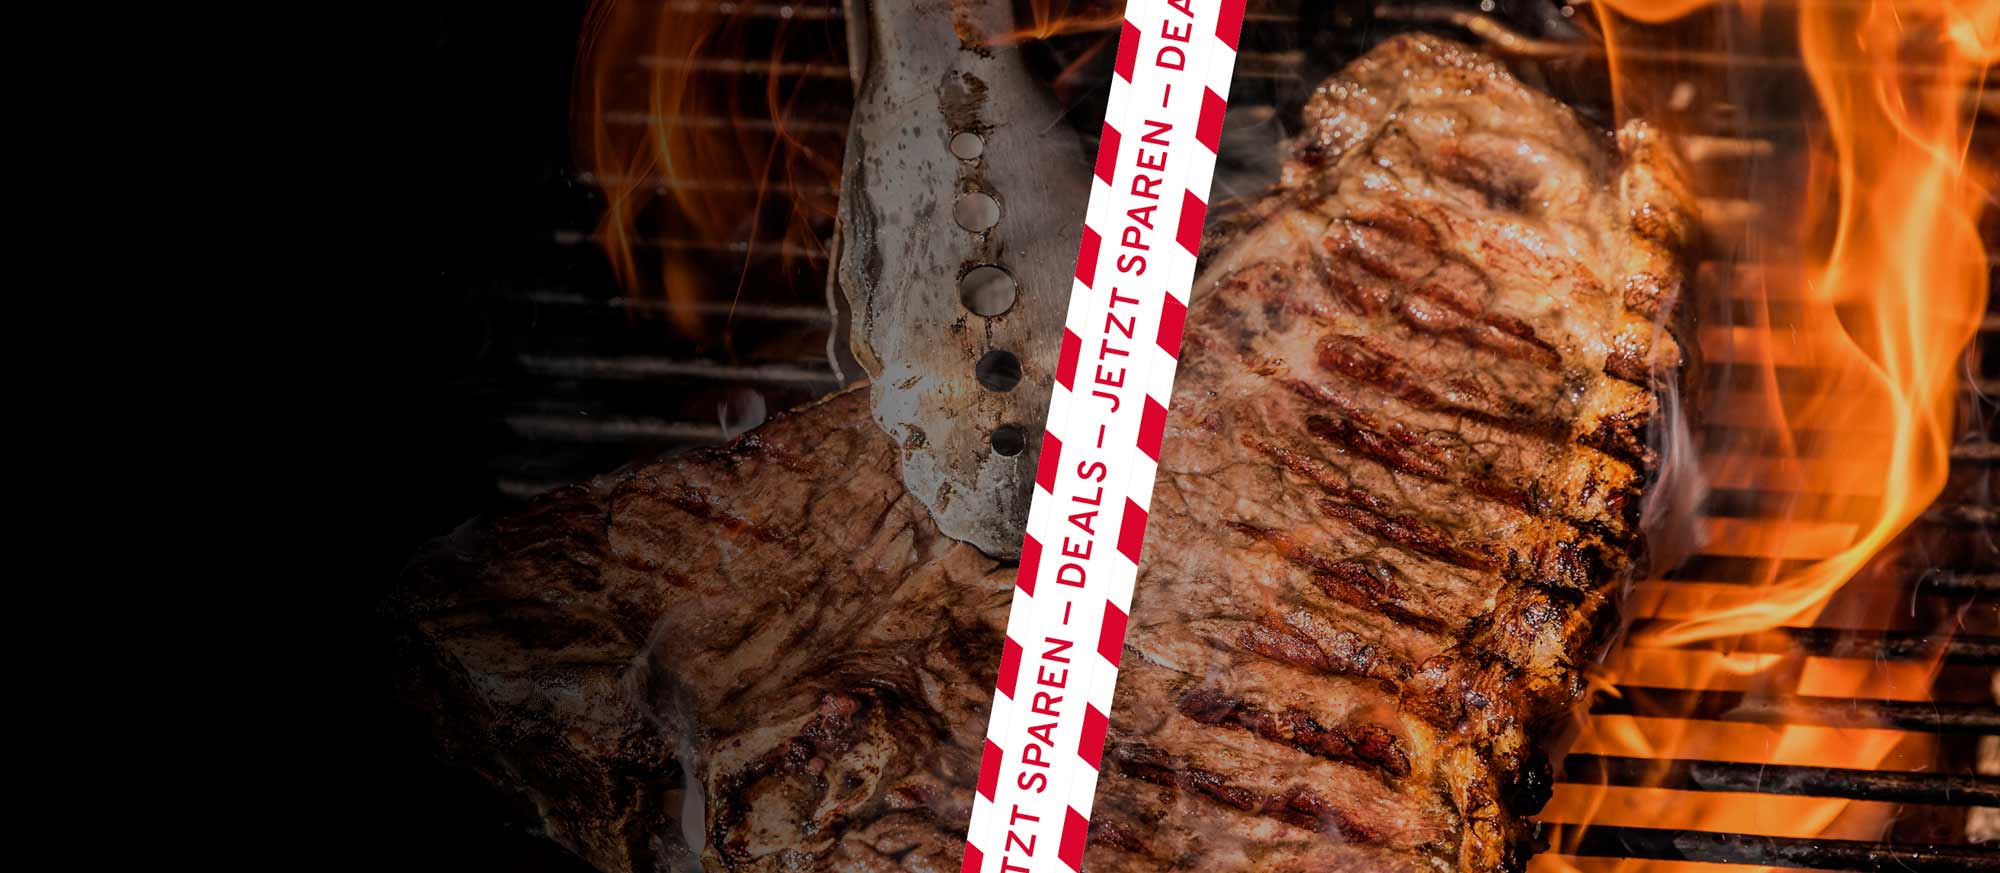 T-Bone Steak auf einem Grillrost mit Flammen